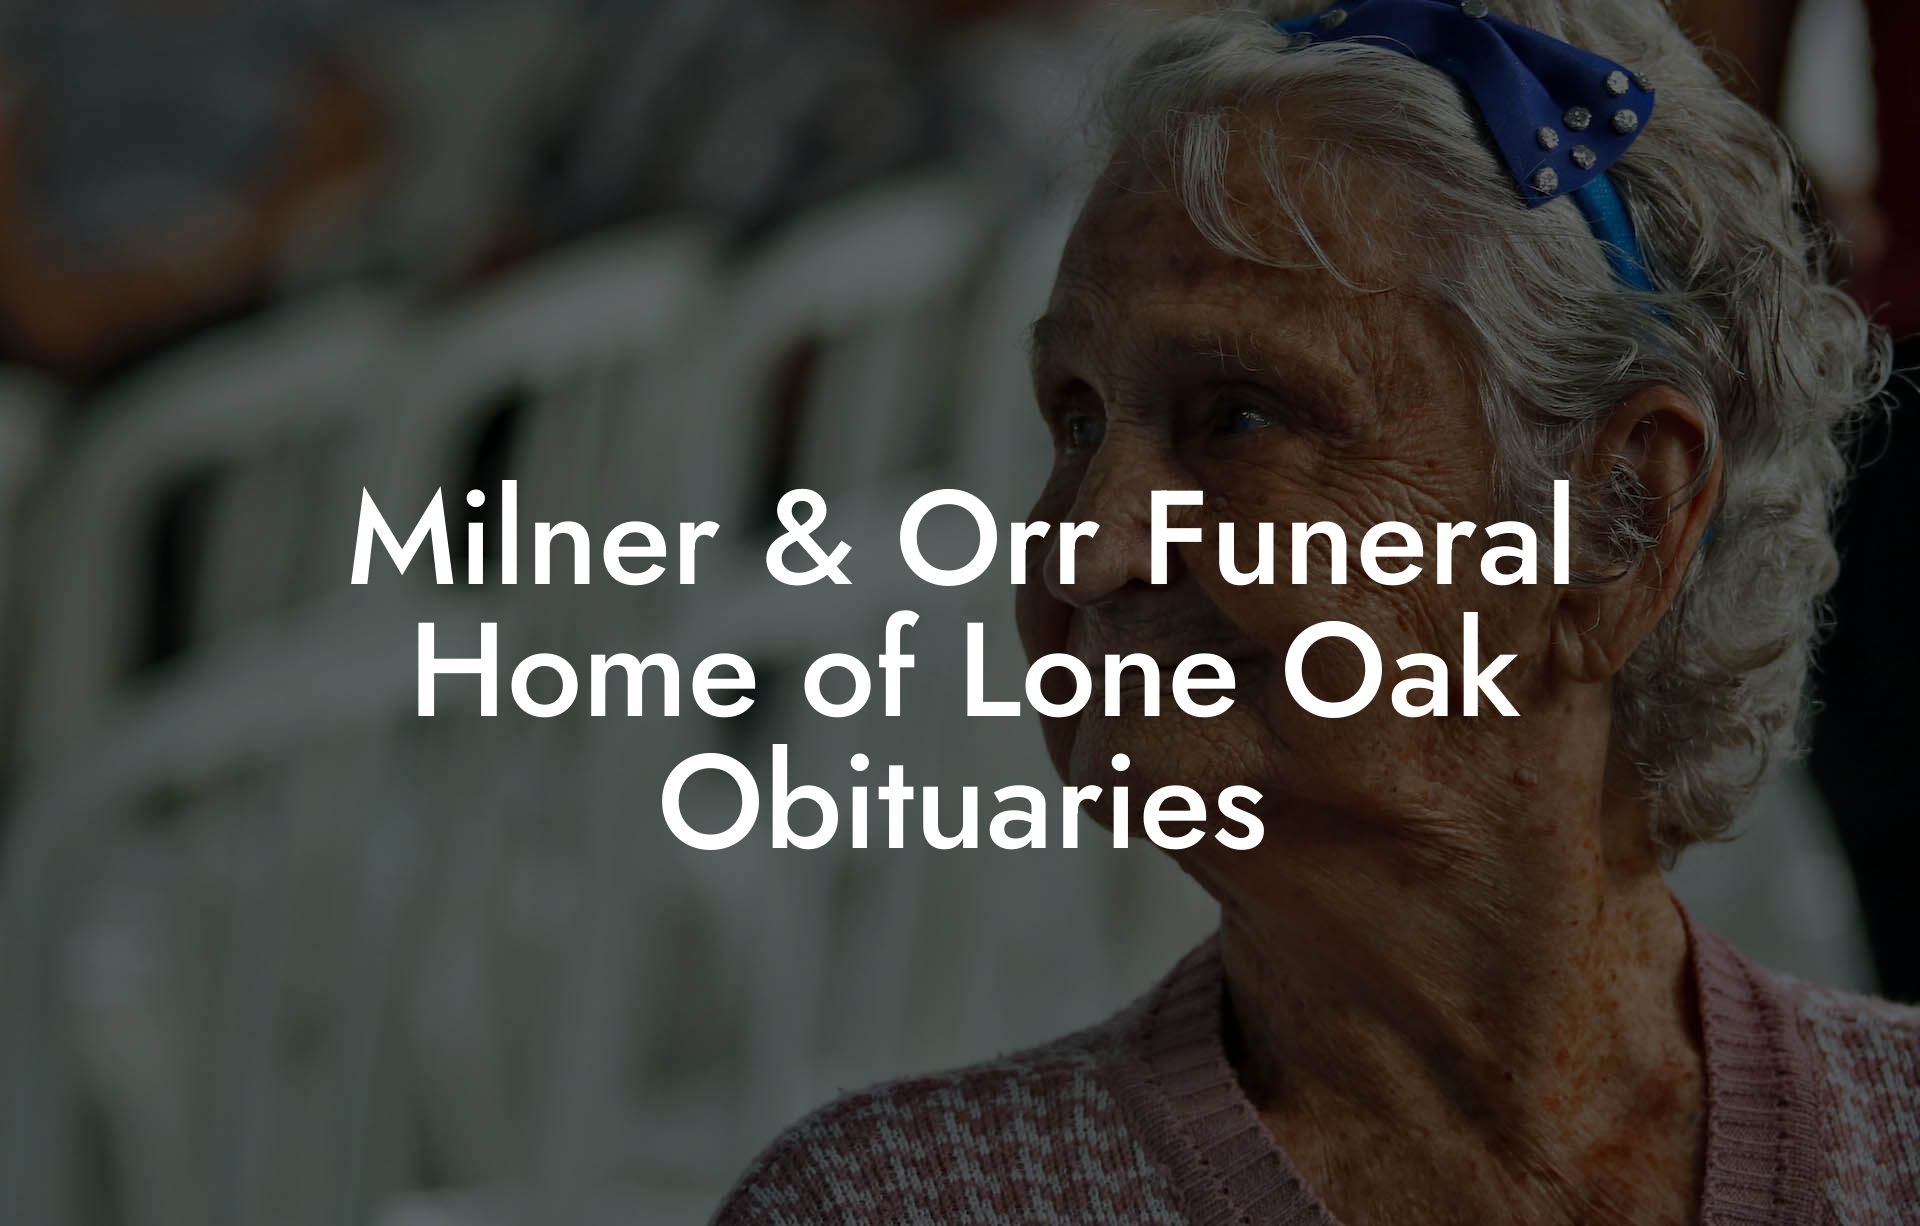 Milner & Orr Funeral Home of Lone Oak Obituaries